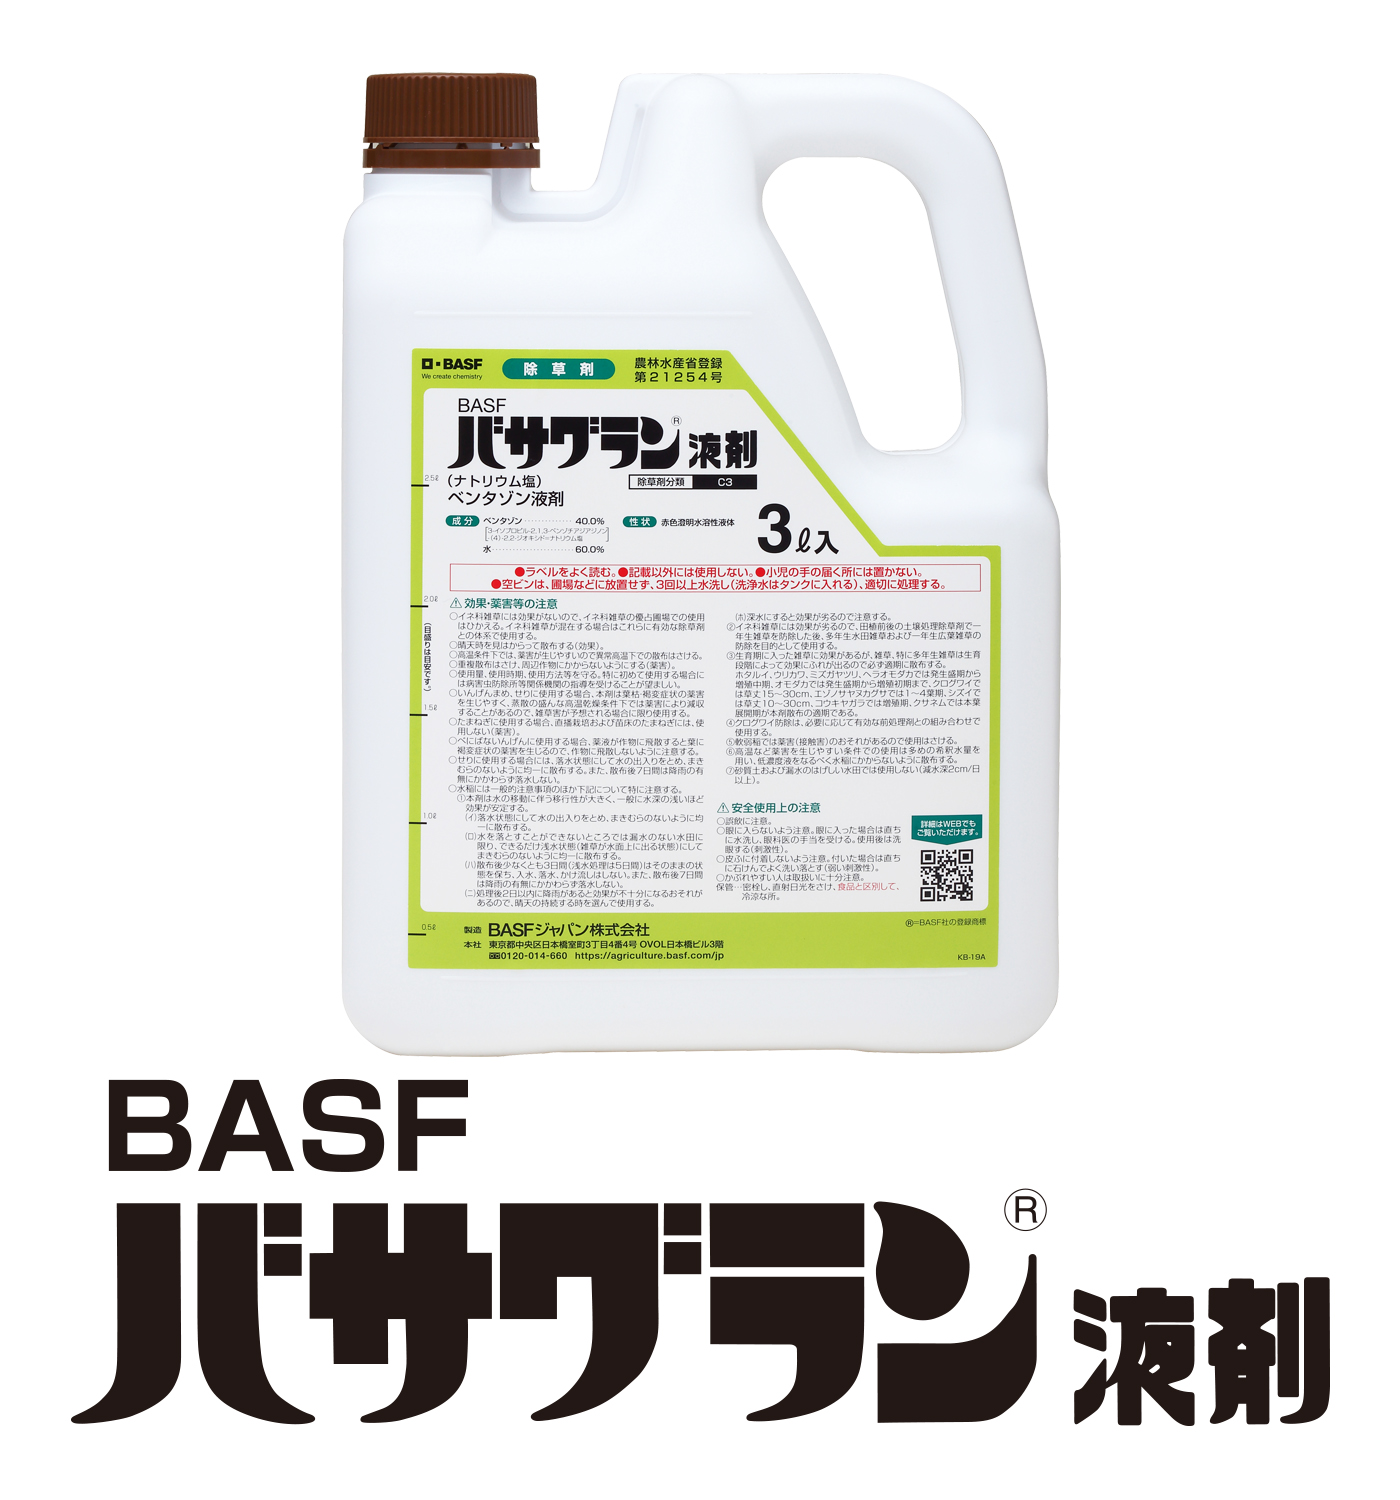 BASFバサグラン®液剤 (ナトリウム塩)